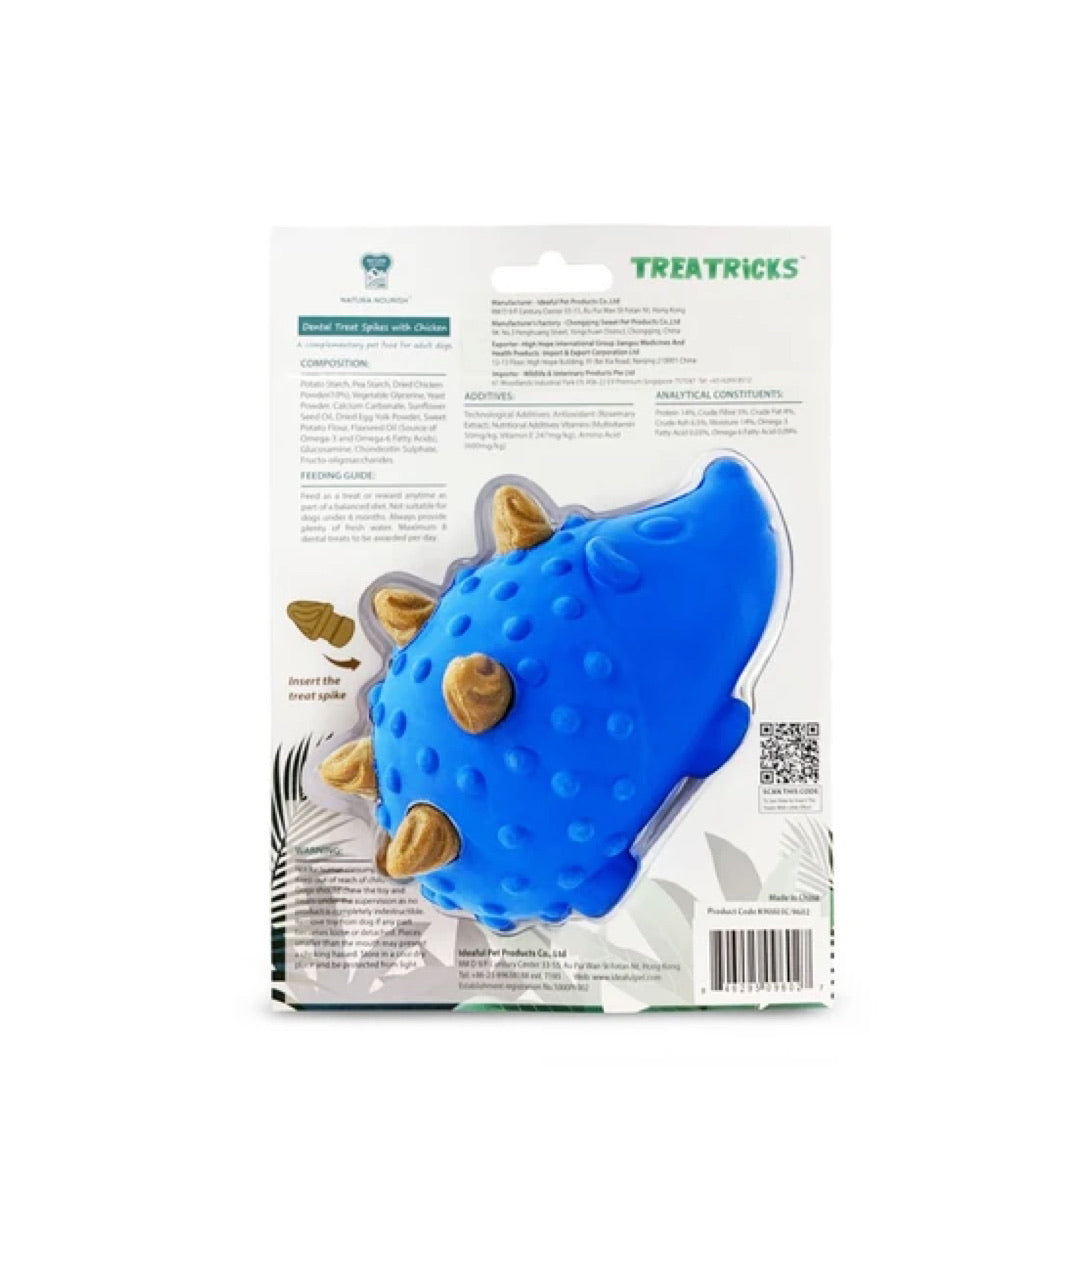 Natura Nourish Treatricks 2-in-1 Chicken Dental Chew Dog Toy (Hedgehog)